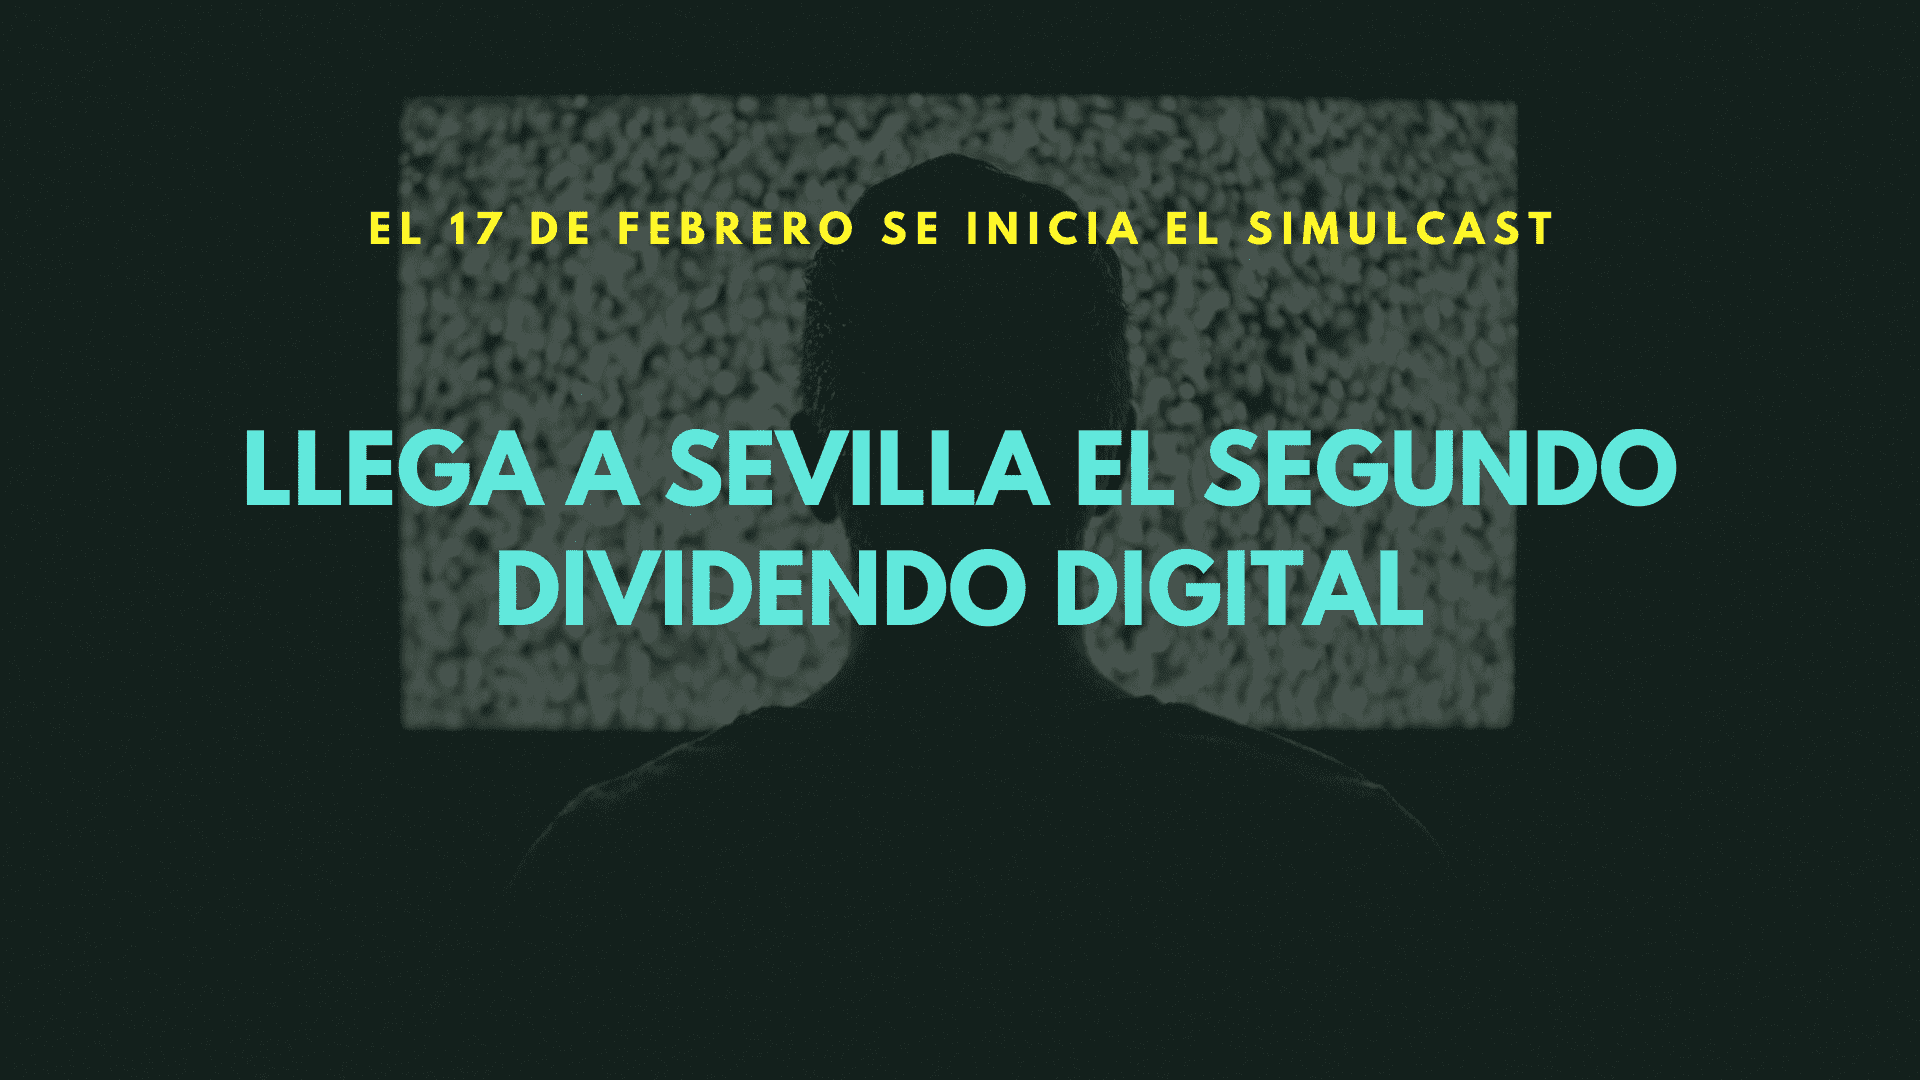 El segundo dividendo digital llega a Sevilla 